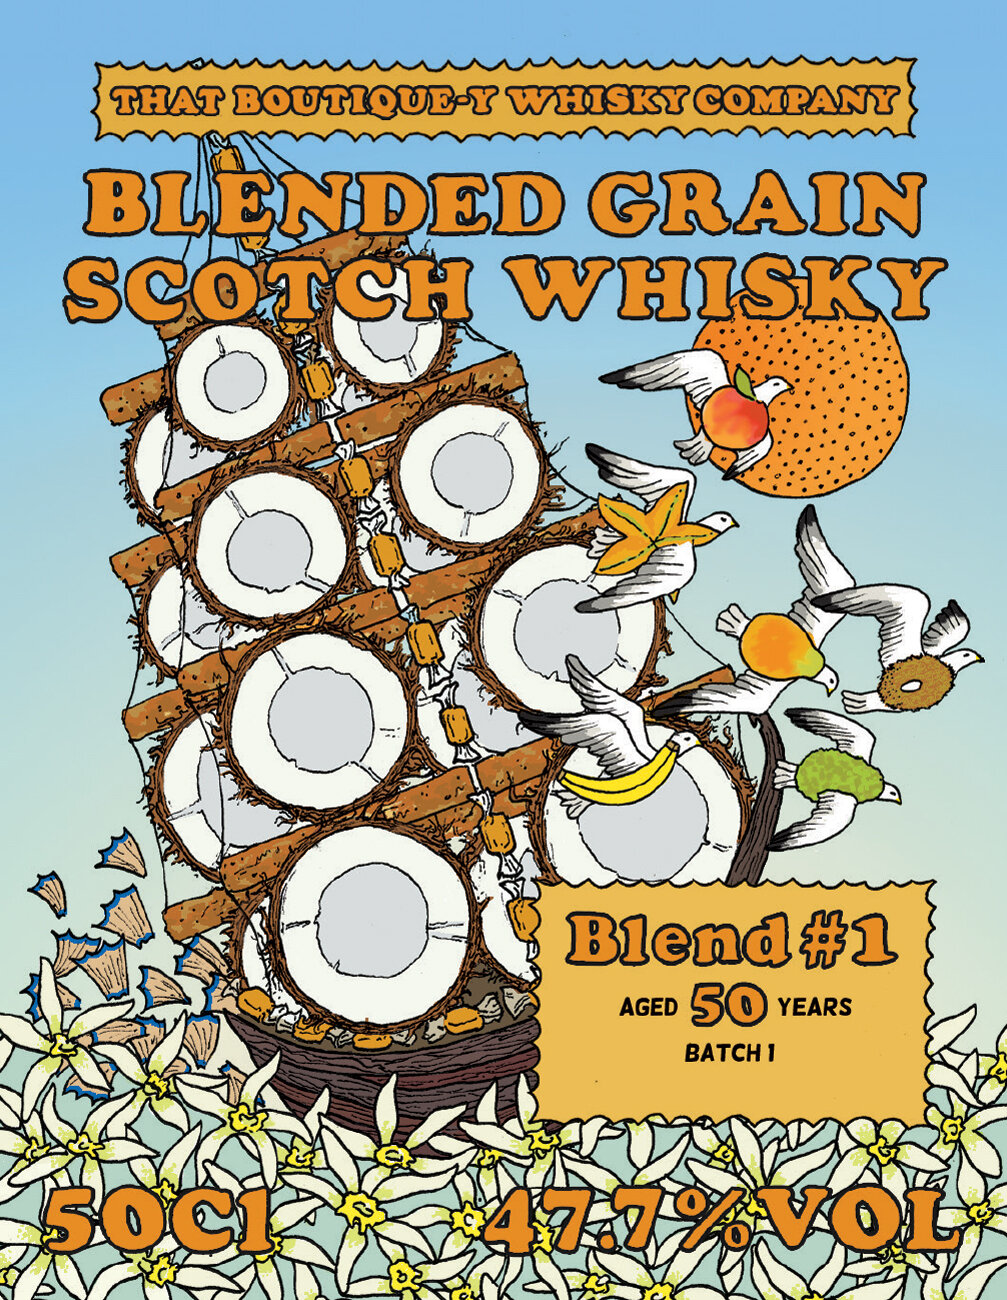 Blended Grain Scotch Whisky 1 B1.jpg